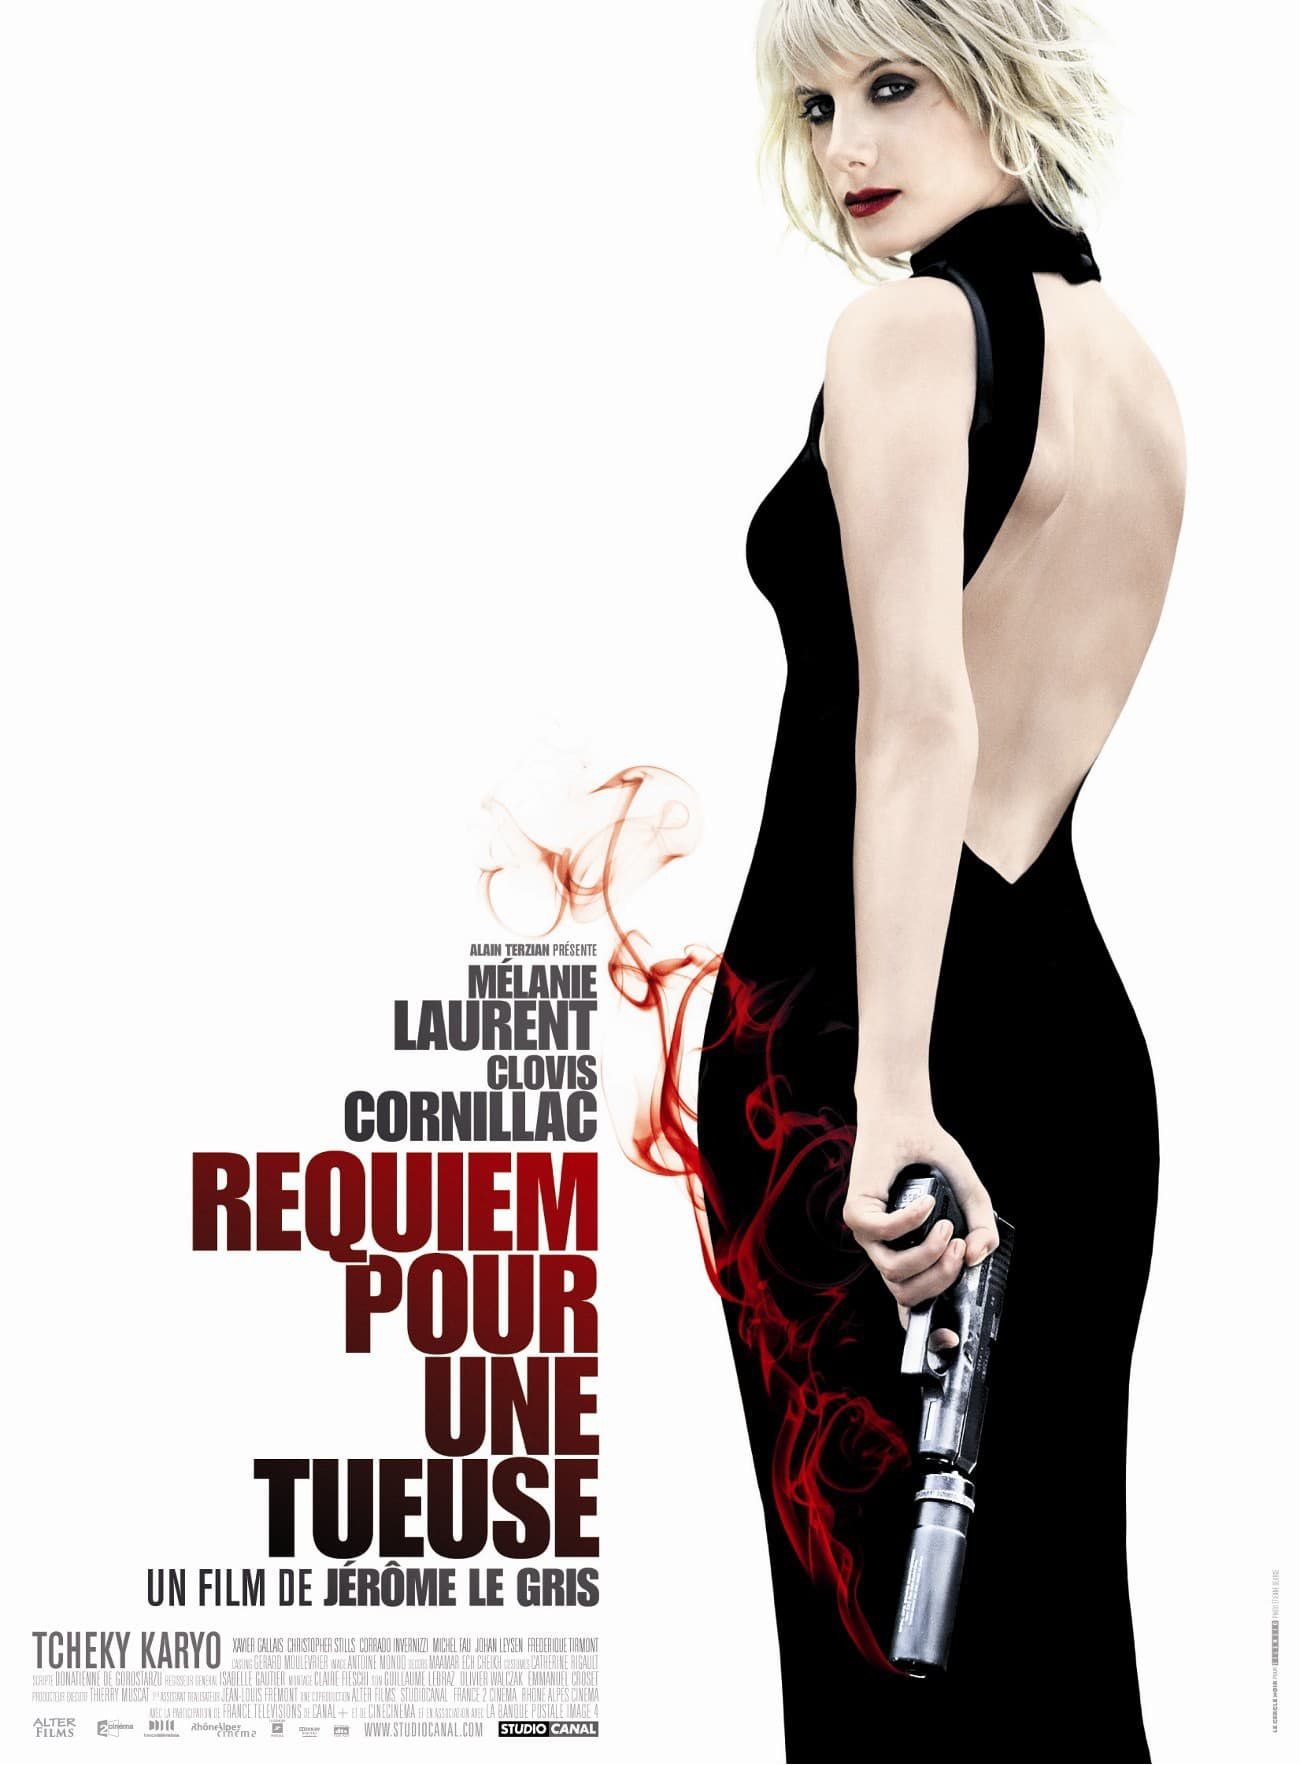 Requiem pour une tueuse - Film (2011) streaming VF gratuit complet